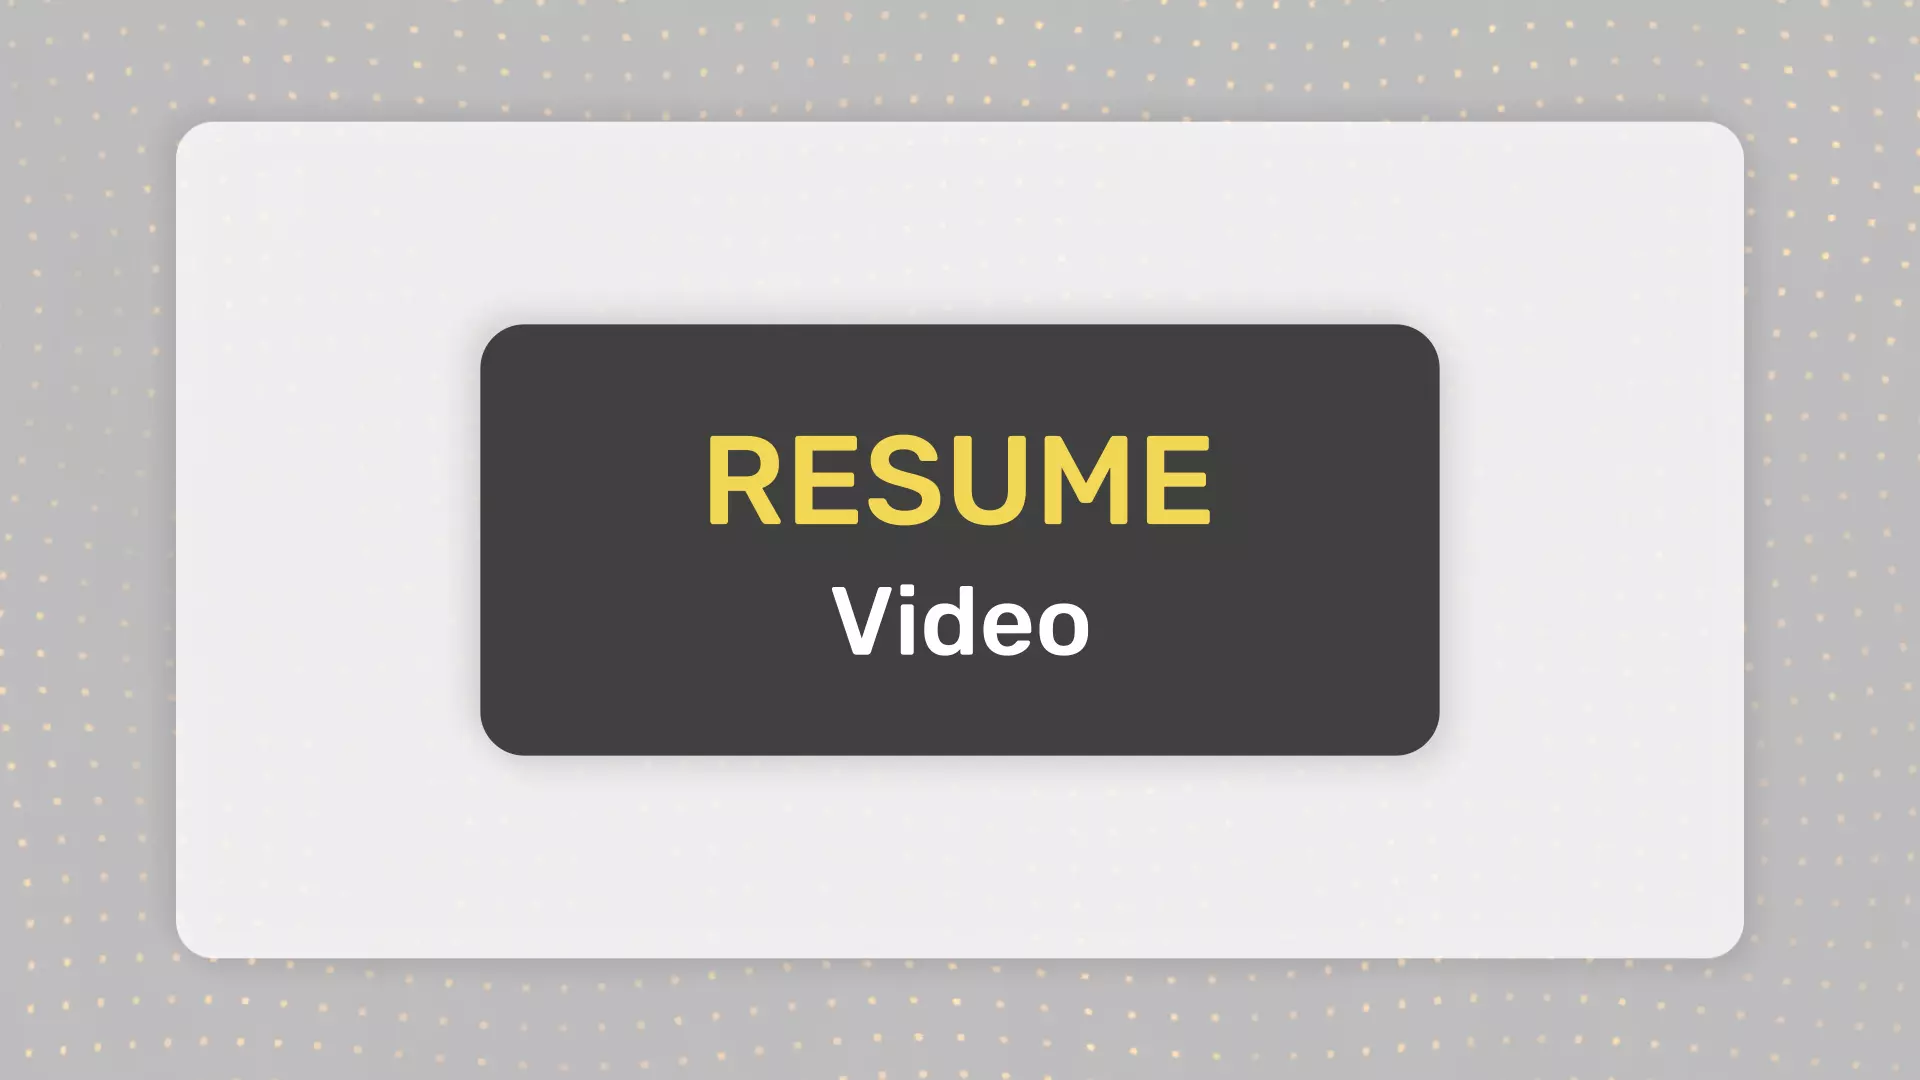 Video resume là một cách để ghi lại hồ sơ của bạn một cách sáng tạo và nổi bật trên các trang tuyển dụng. Hãy xem các hình ảnh liên quan để có thêm ý tưởng cho video resume của bạn.